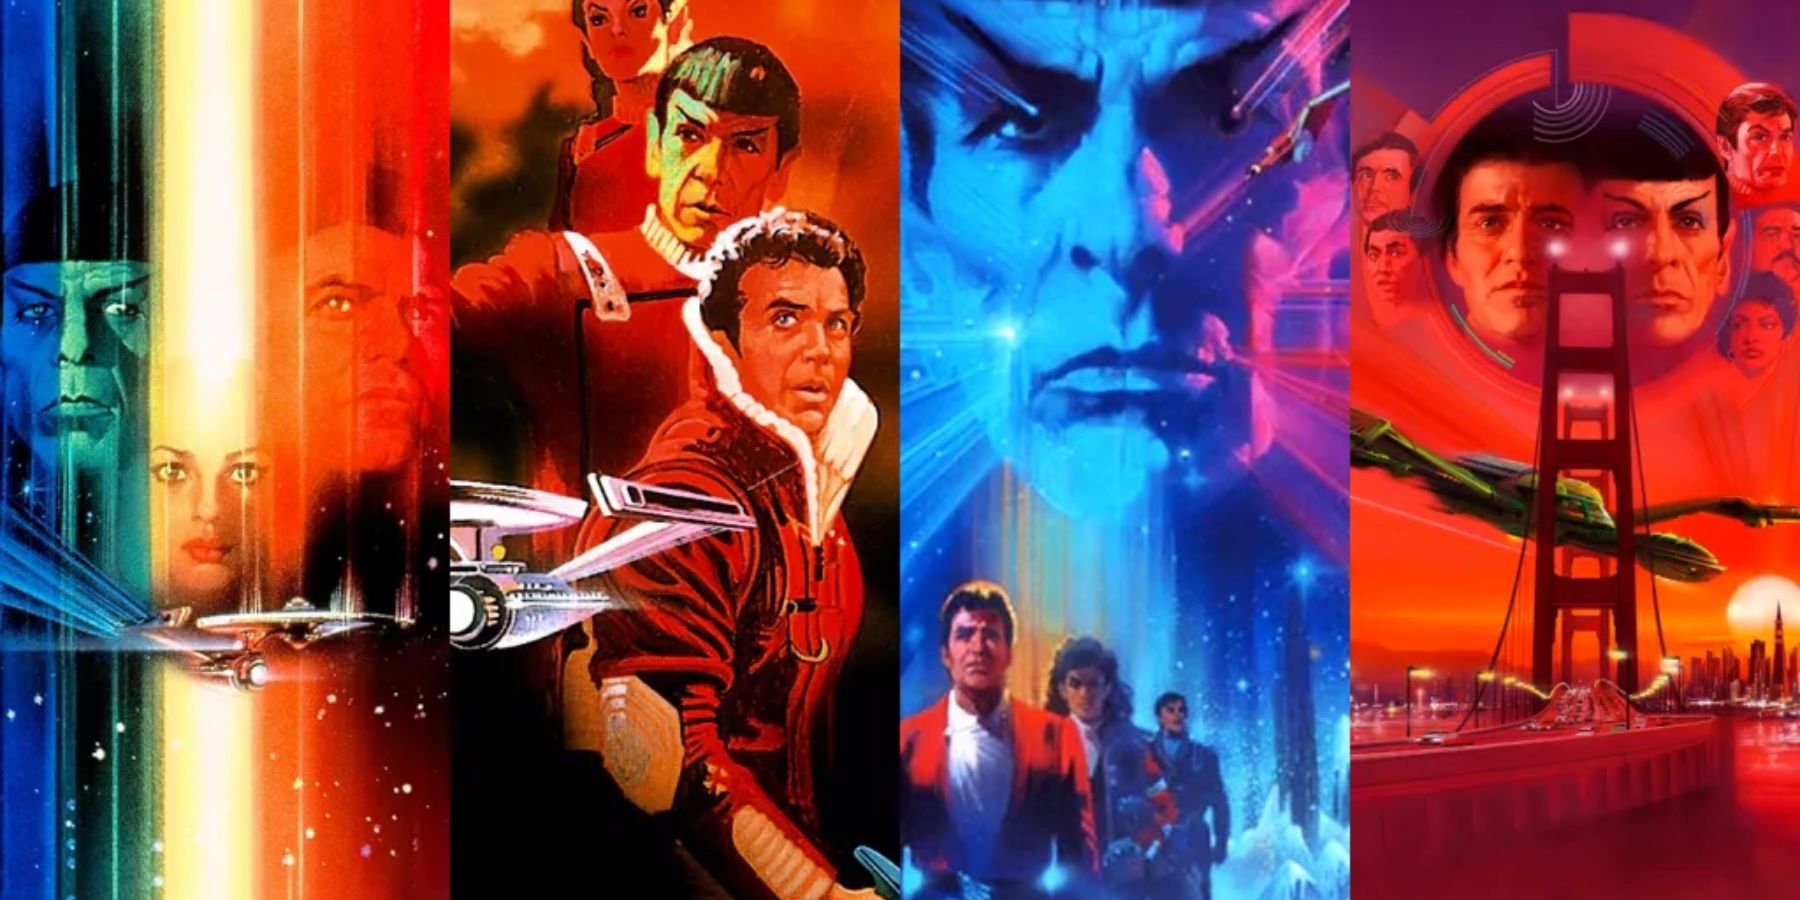 Mikä on paras järjestys katsella Star Trek -elokuvia?